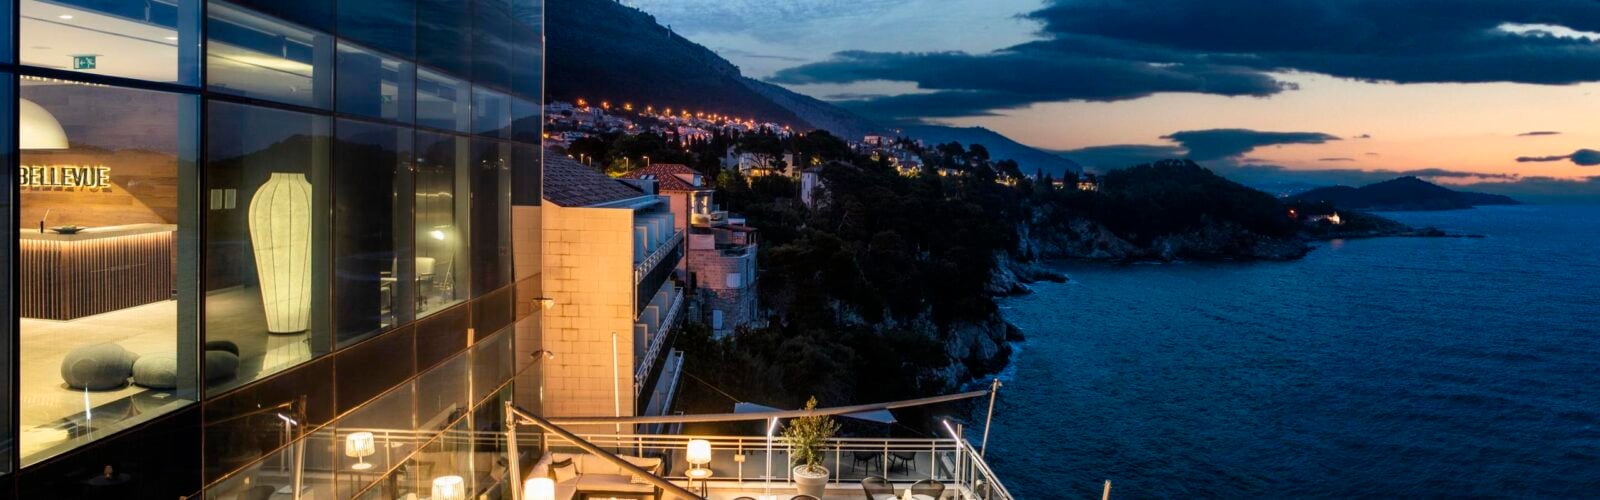 Balcony view at dusk overlooking the ocean in Croatia Hotel Bellevue Dubrovnik